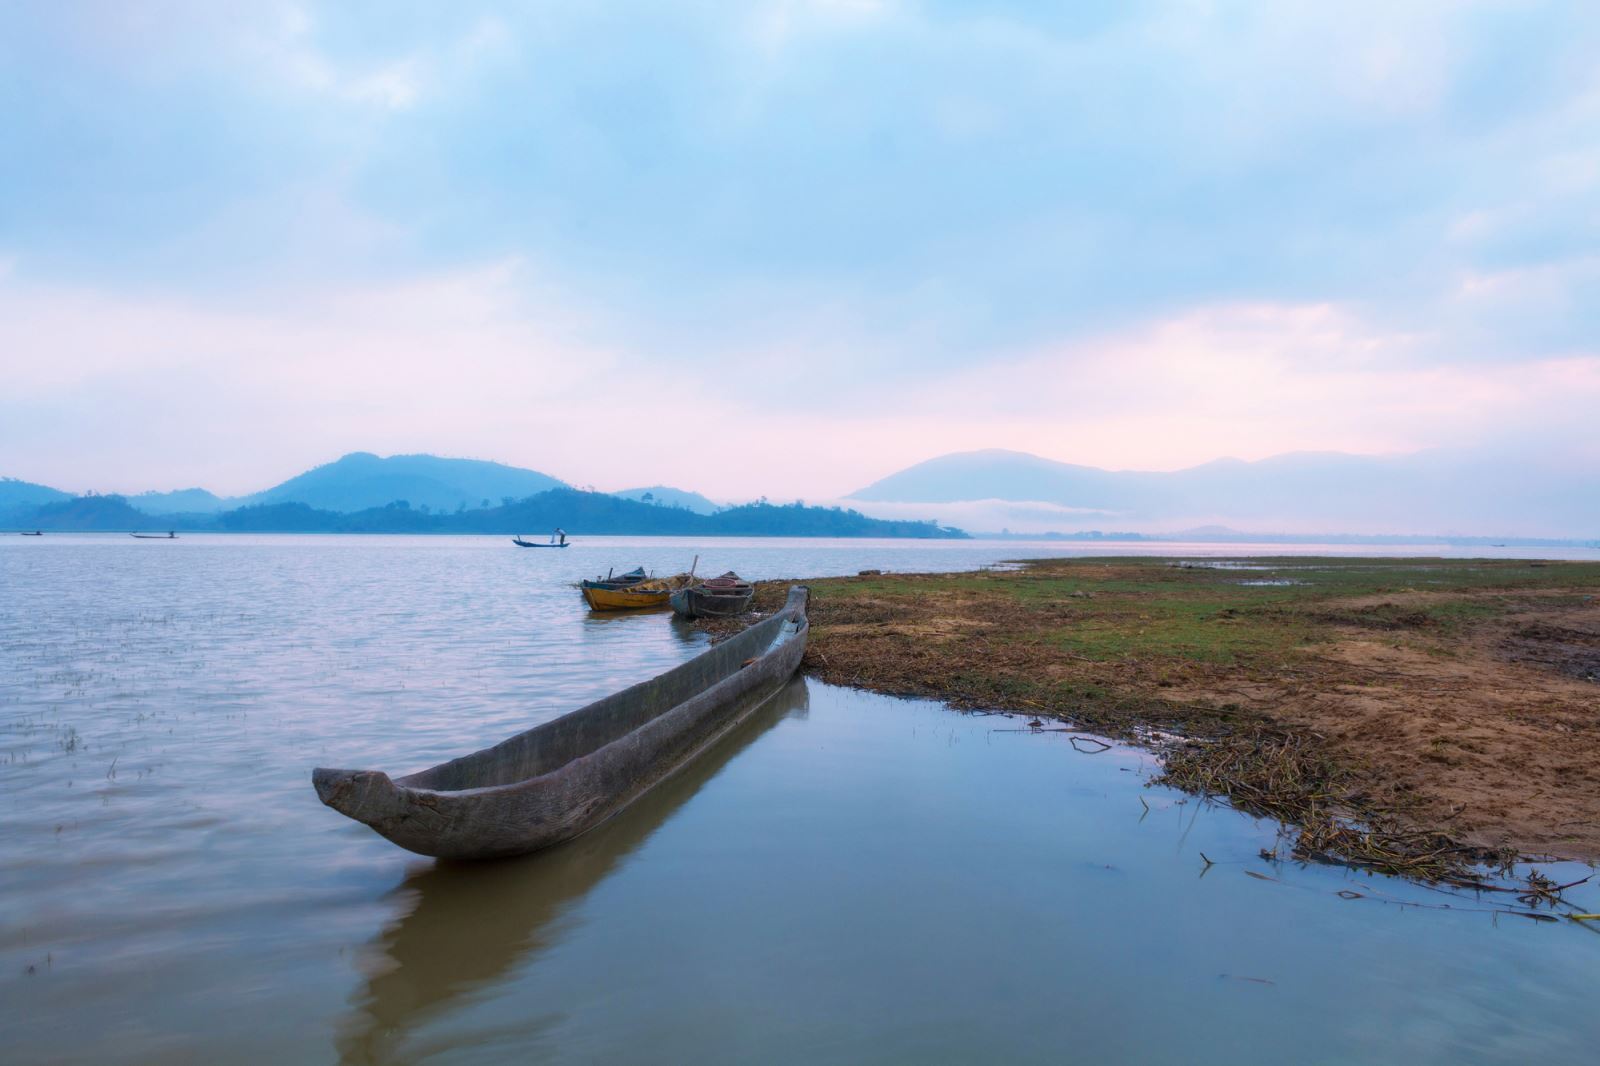 Thuyền độc mộc trên hồ Lắk là phương tiện đánh bắt cá và đi lại của bà con người người M’Nông R’Lâm trên hồ.